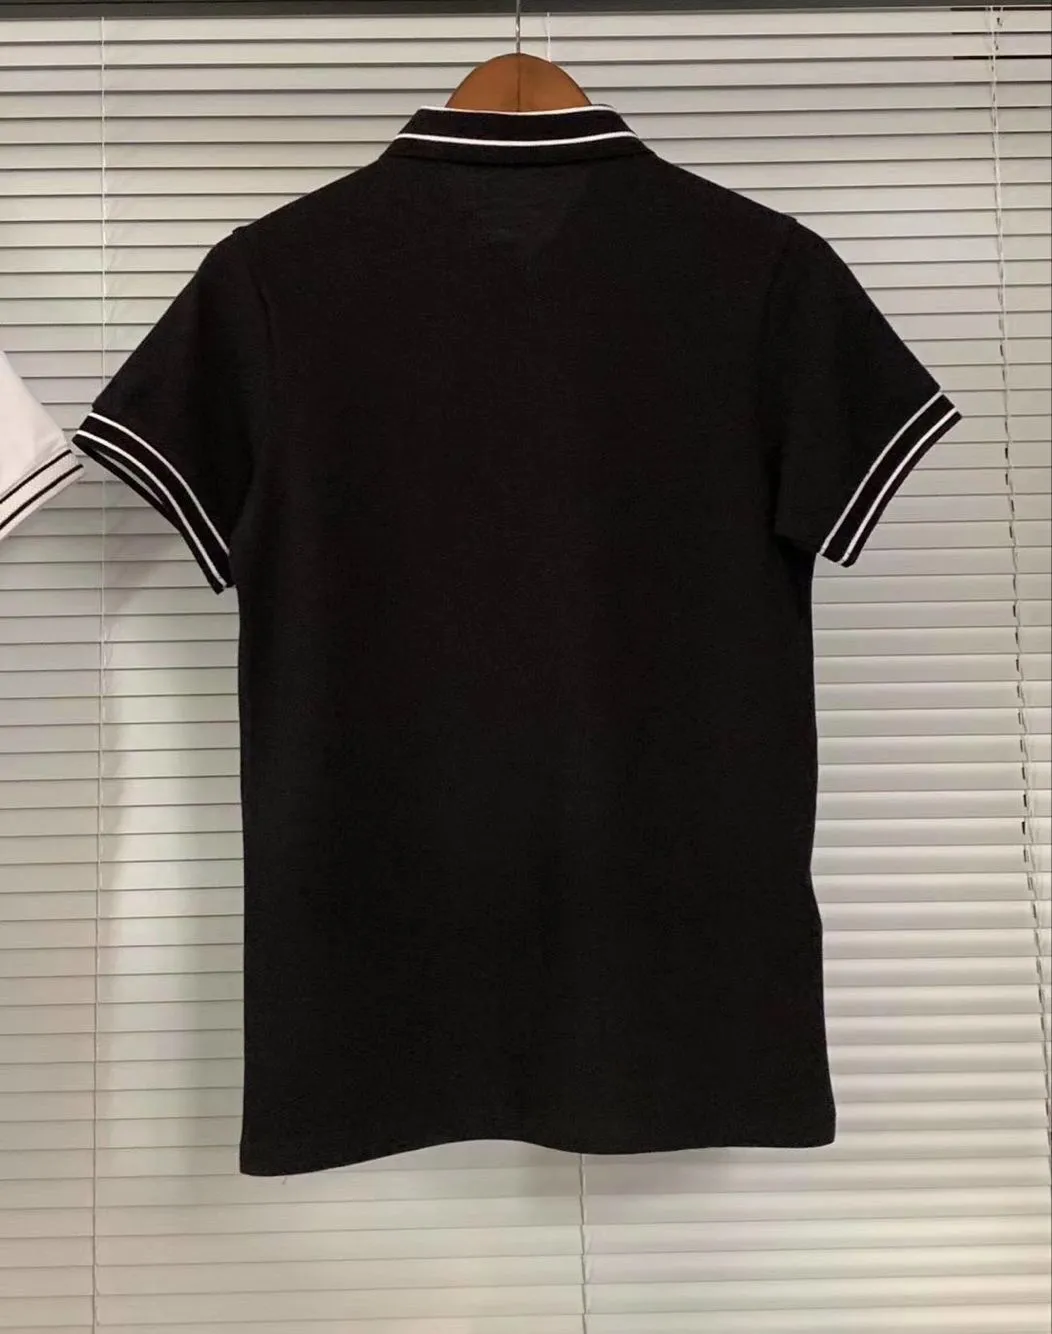 Uomini europei Fred T Shirt 2020 Estate Moda Cotone manica corta Solid Perry Polo Mens Casual Top Tees Nero Bianco Taglia S-XXL